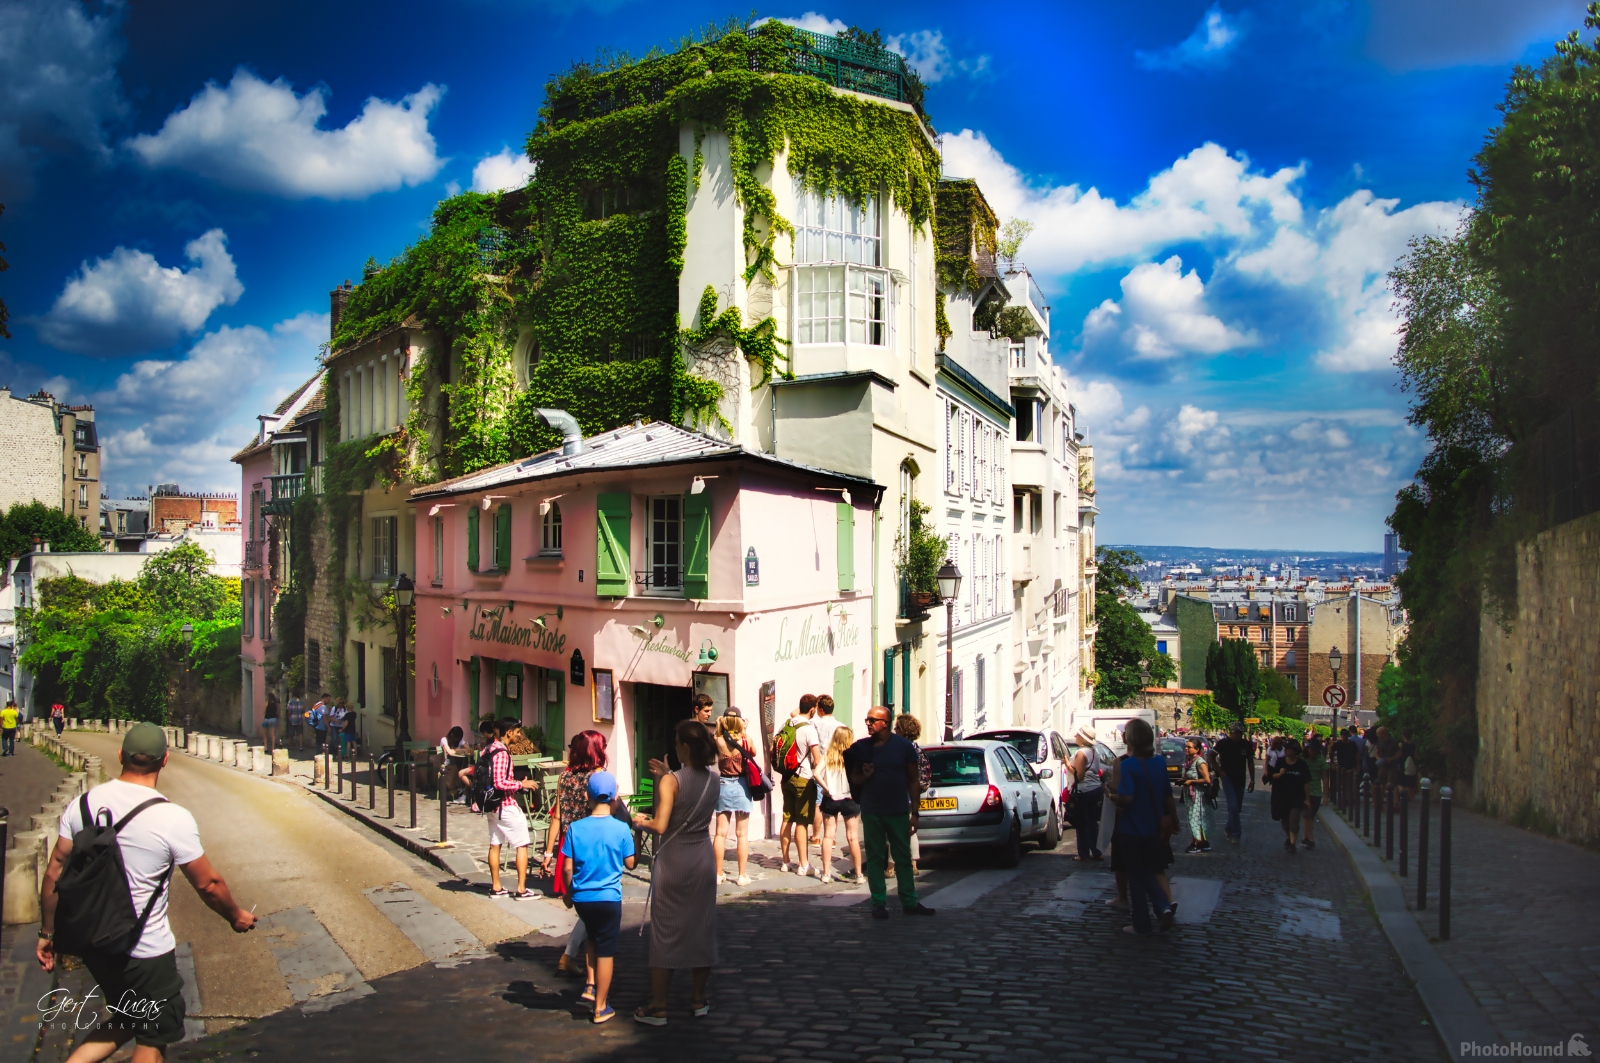 Image of La Maison Rose, Montmartre by Gert Lucas